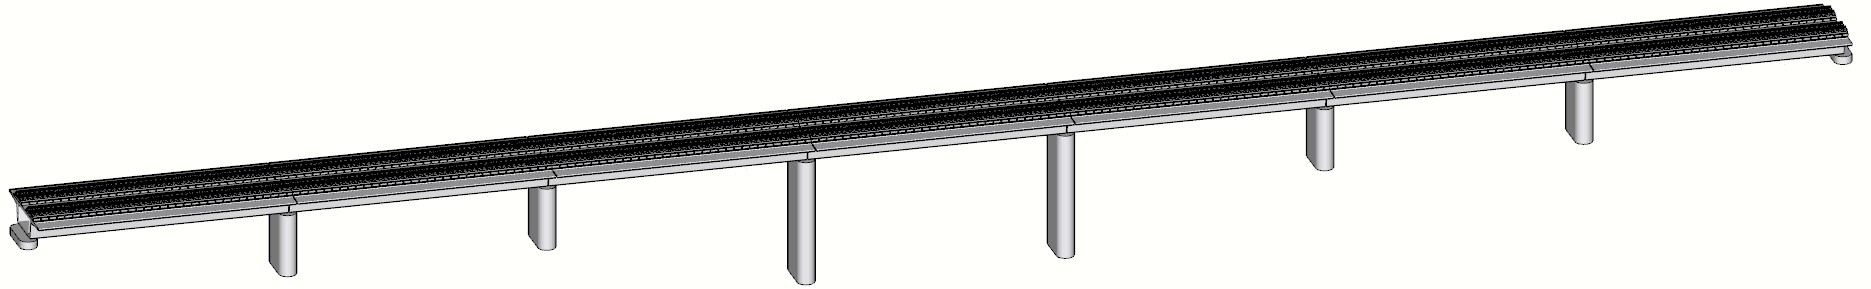 高速铁路简支梁桥无砟轨道II板的简化模型